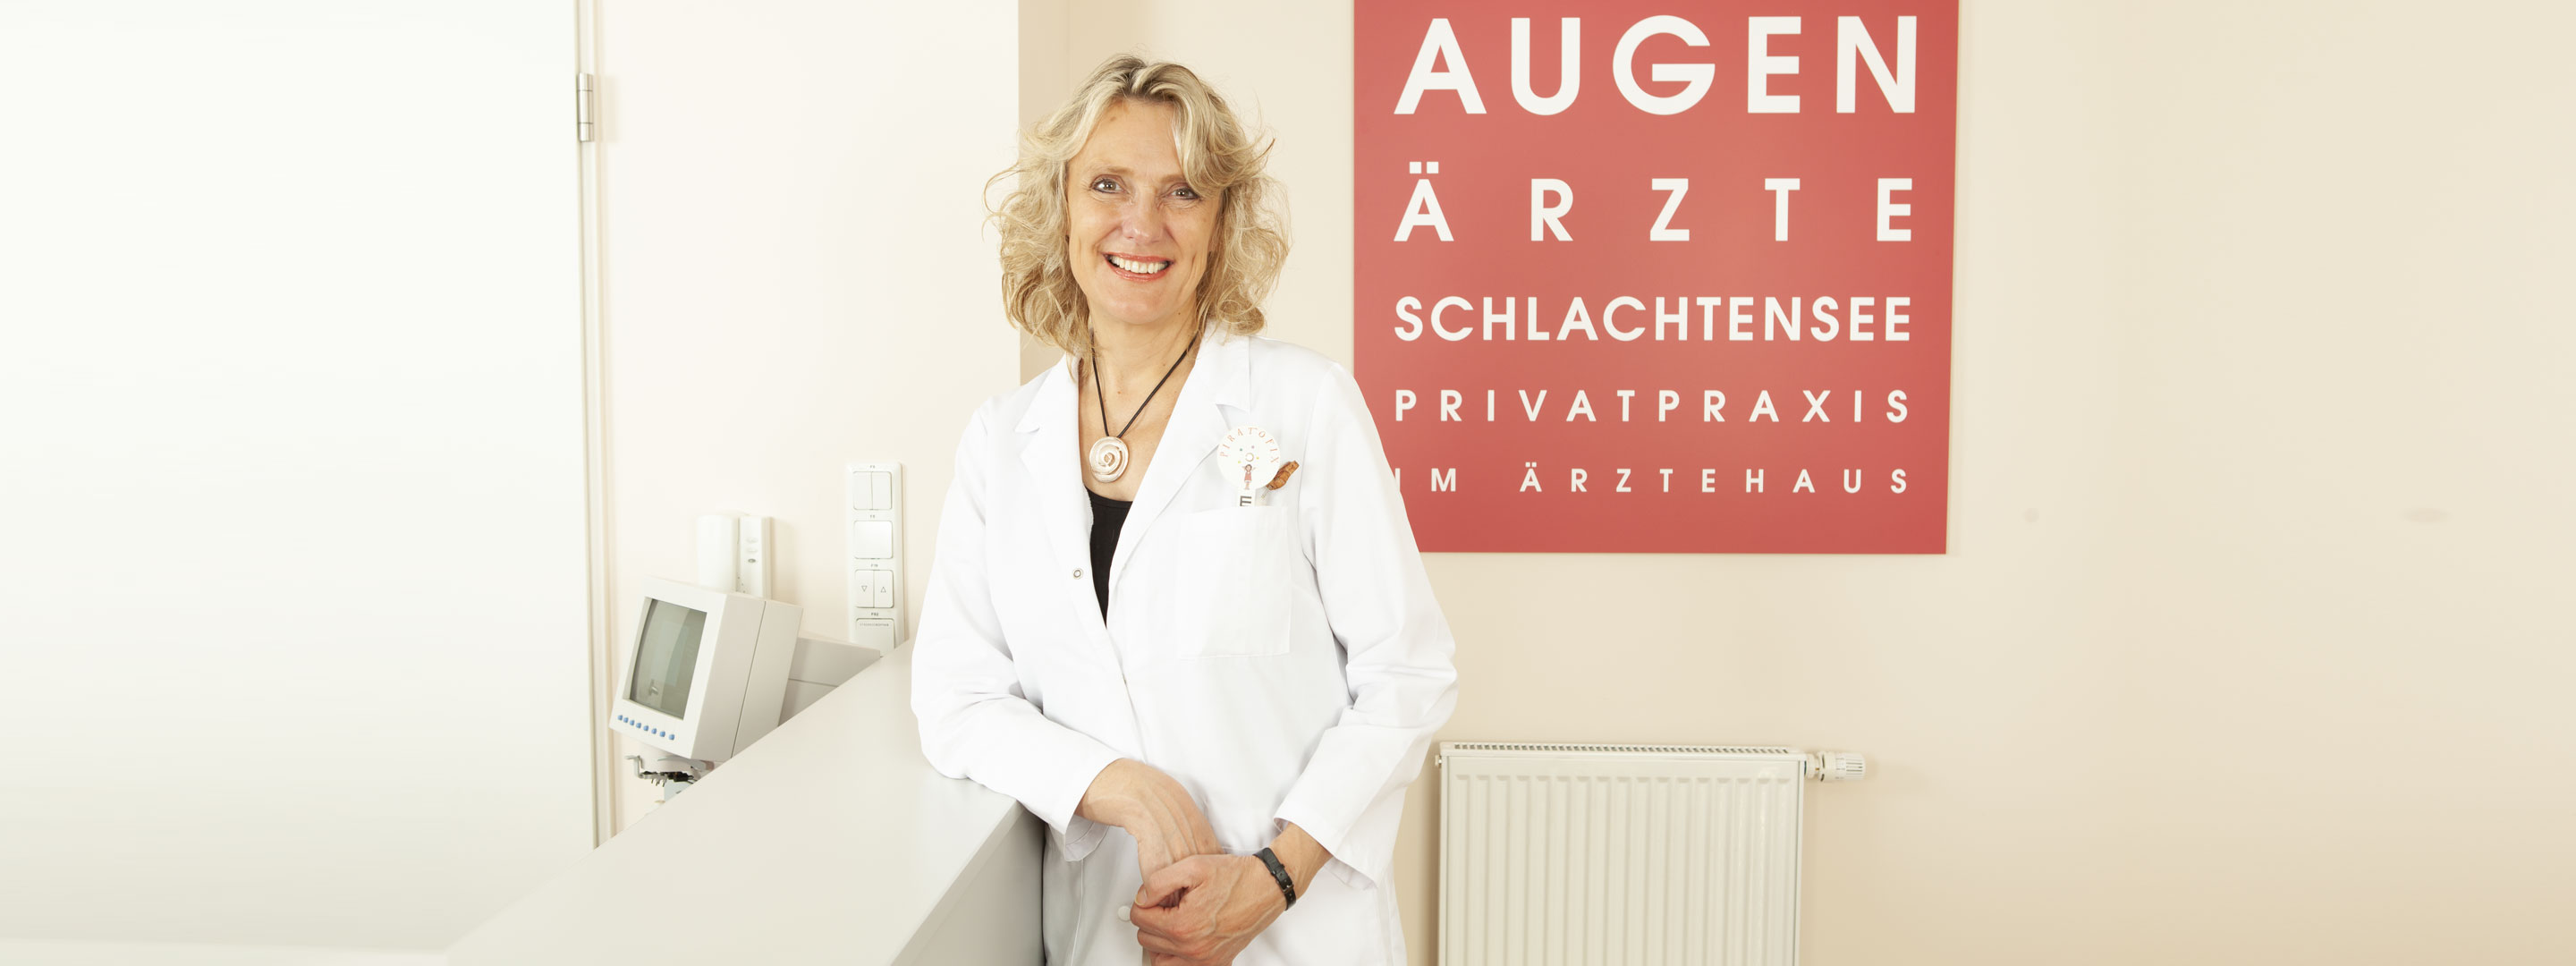 Über Dr. med. Andrea Lietz-Partzsch, Ärztin für Augenheilkunde in den Augenarztpraxen Berlin Wilmersdorf Schmargendorf und Zehlendorf Schlachtensee